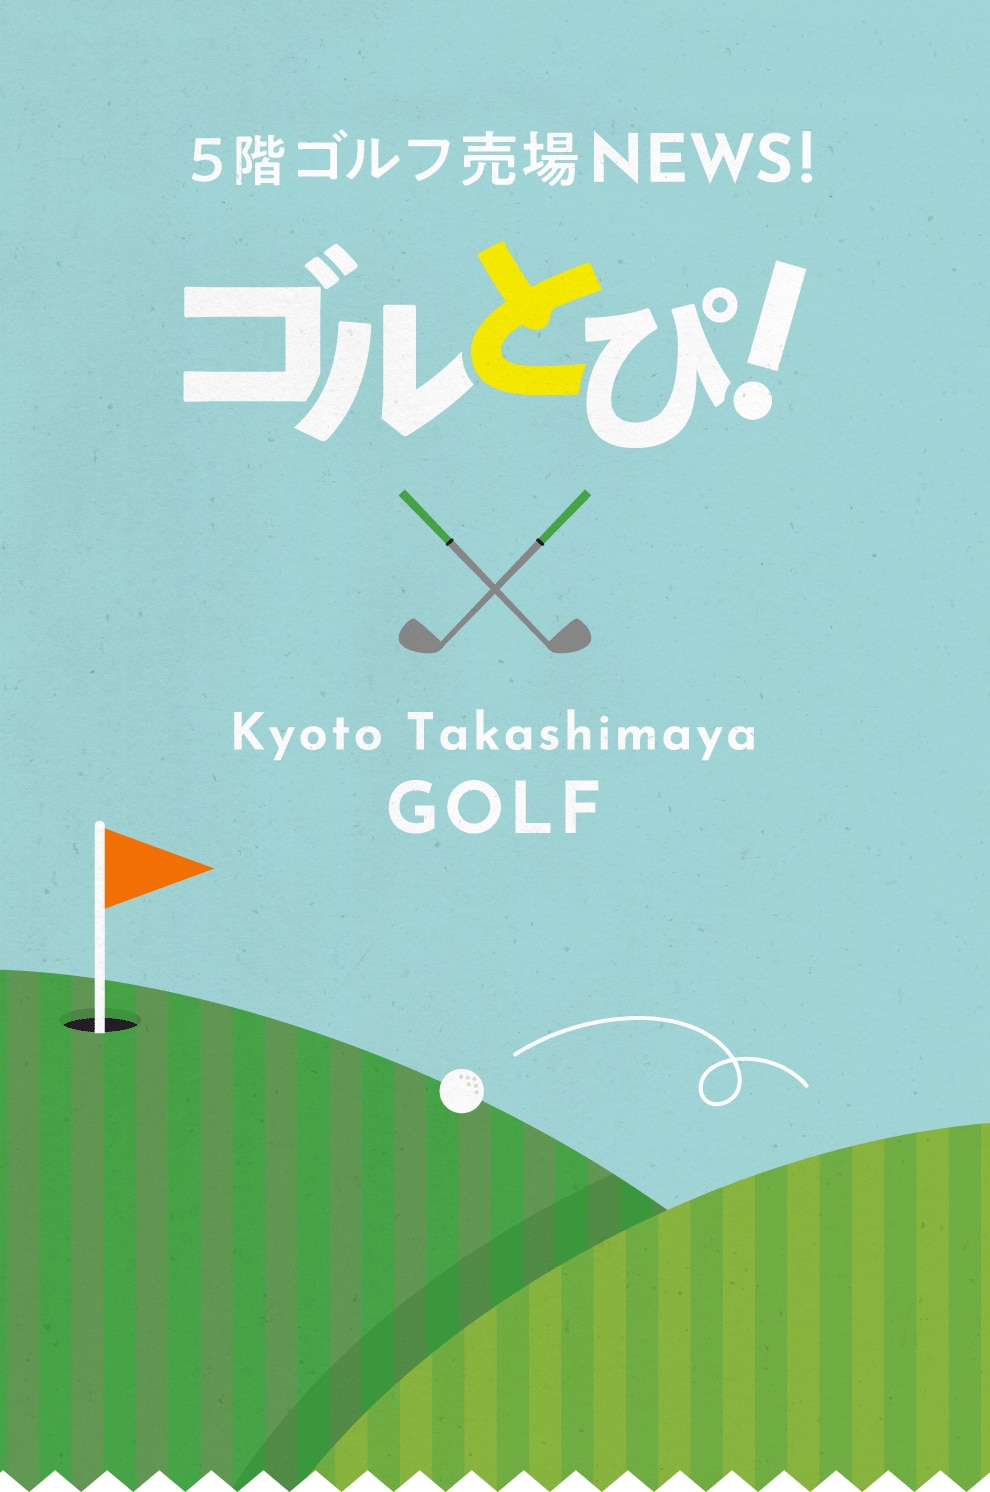 5階ゴルフ売場 NEWS! ゴルとぴ! X Kyoto Takashimaya GOLF